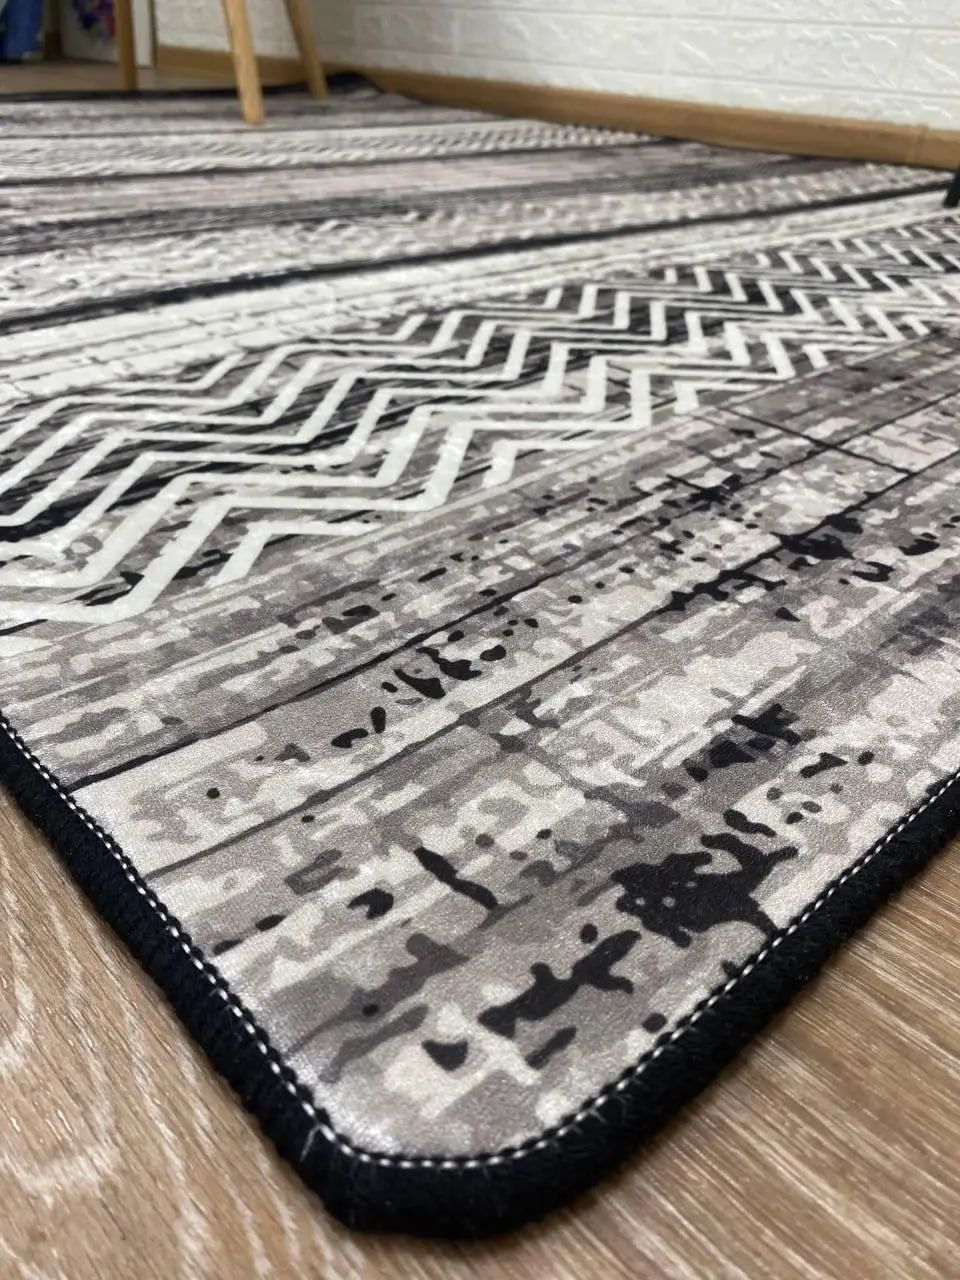 Турецький килим "Орнамент" підкладка з еко-шкіри